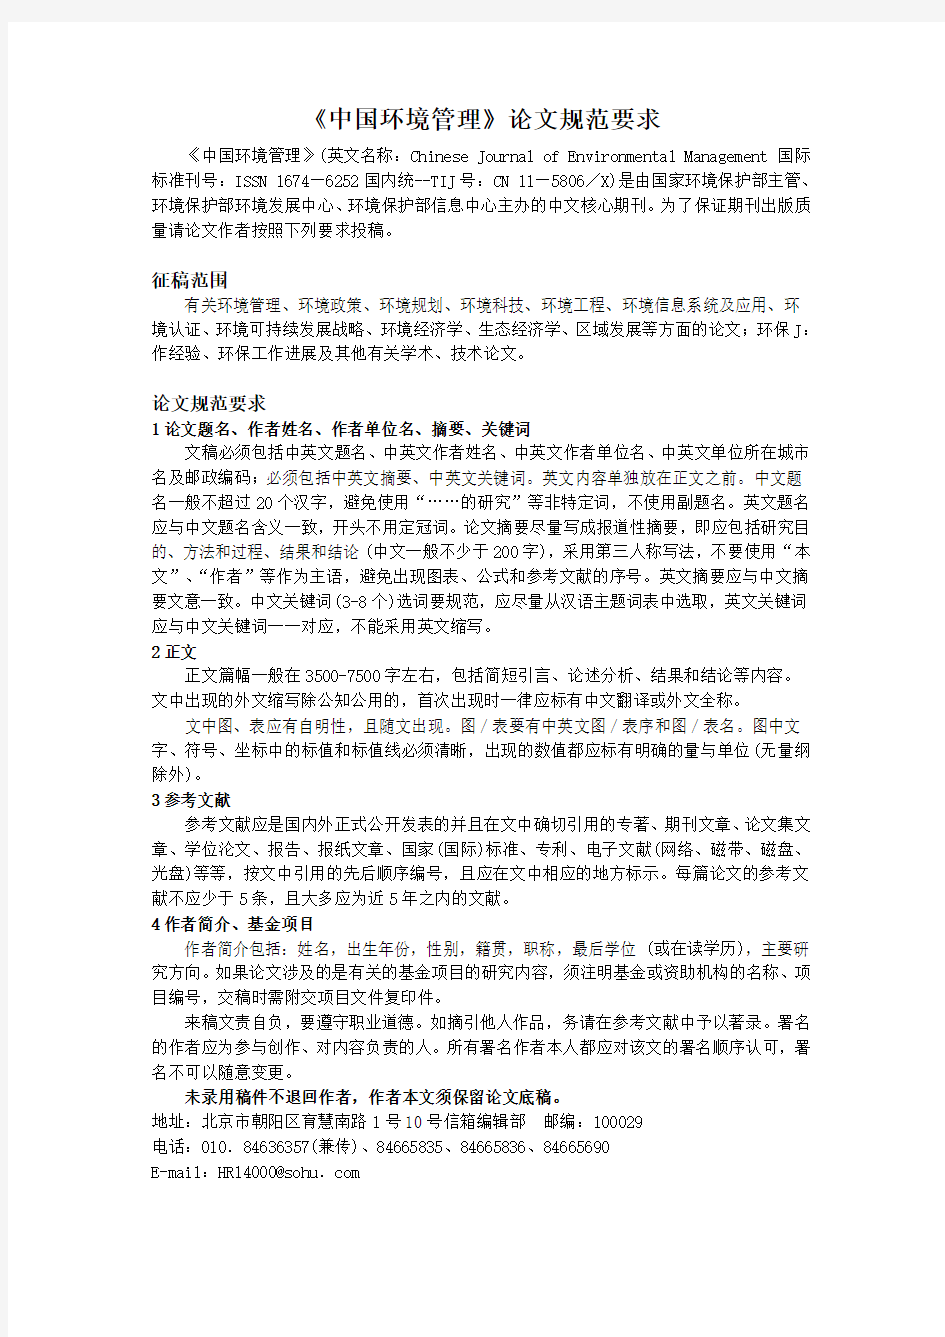 《中国环境管理》论文规范及参考文献格式